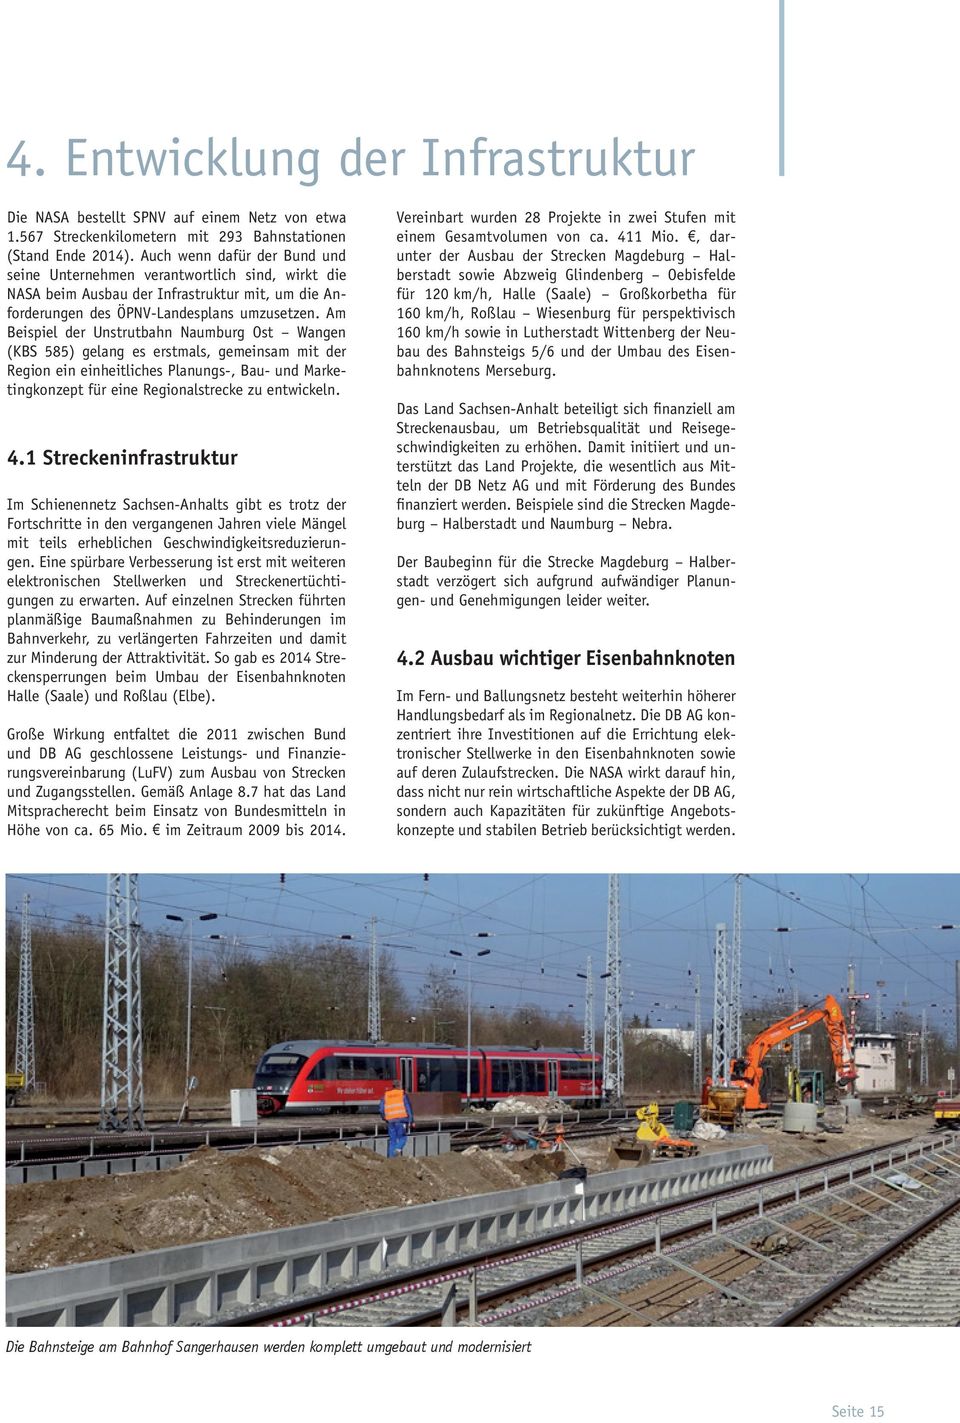 Am Beispiel der Unstrutbahn Naumburg Ost Wangen (KBS 585) gelang es erstmals, gemeinsam mit der Region ein einheitliches Planungs-, Bau- und Marketingkonzept für eine Regionalstrecke zu entwickeln. 4.